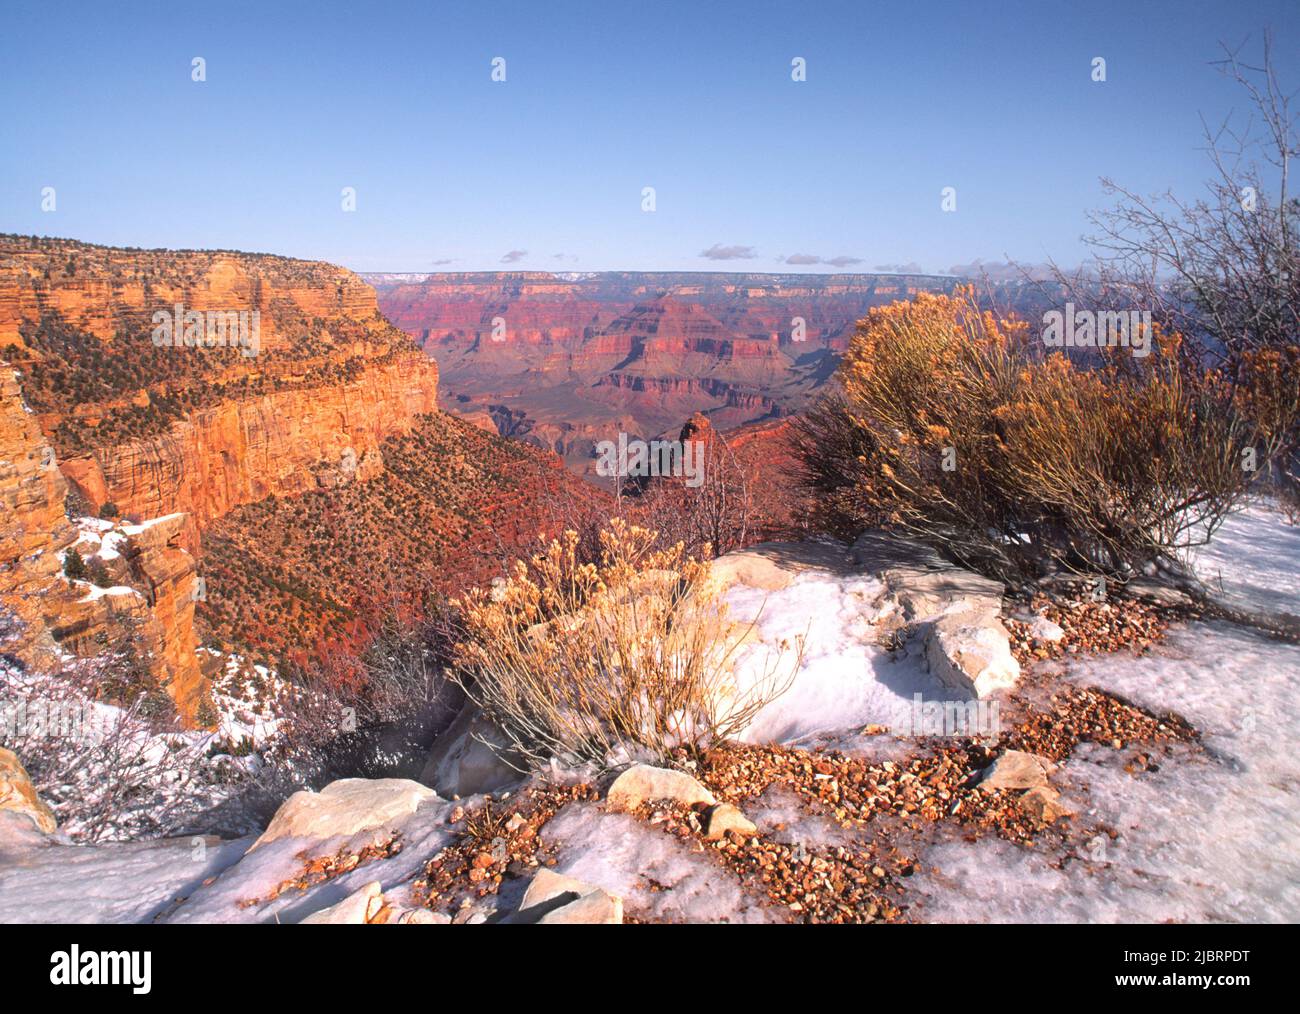 Grand Canyon National Park South Rim. Arizona, USA. Malerische Landschaft von Schluchten Schnee auf dem Boden. Amerikanische Nationalparks. Weltkulturerbe. Herbst Stockfoto